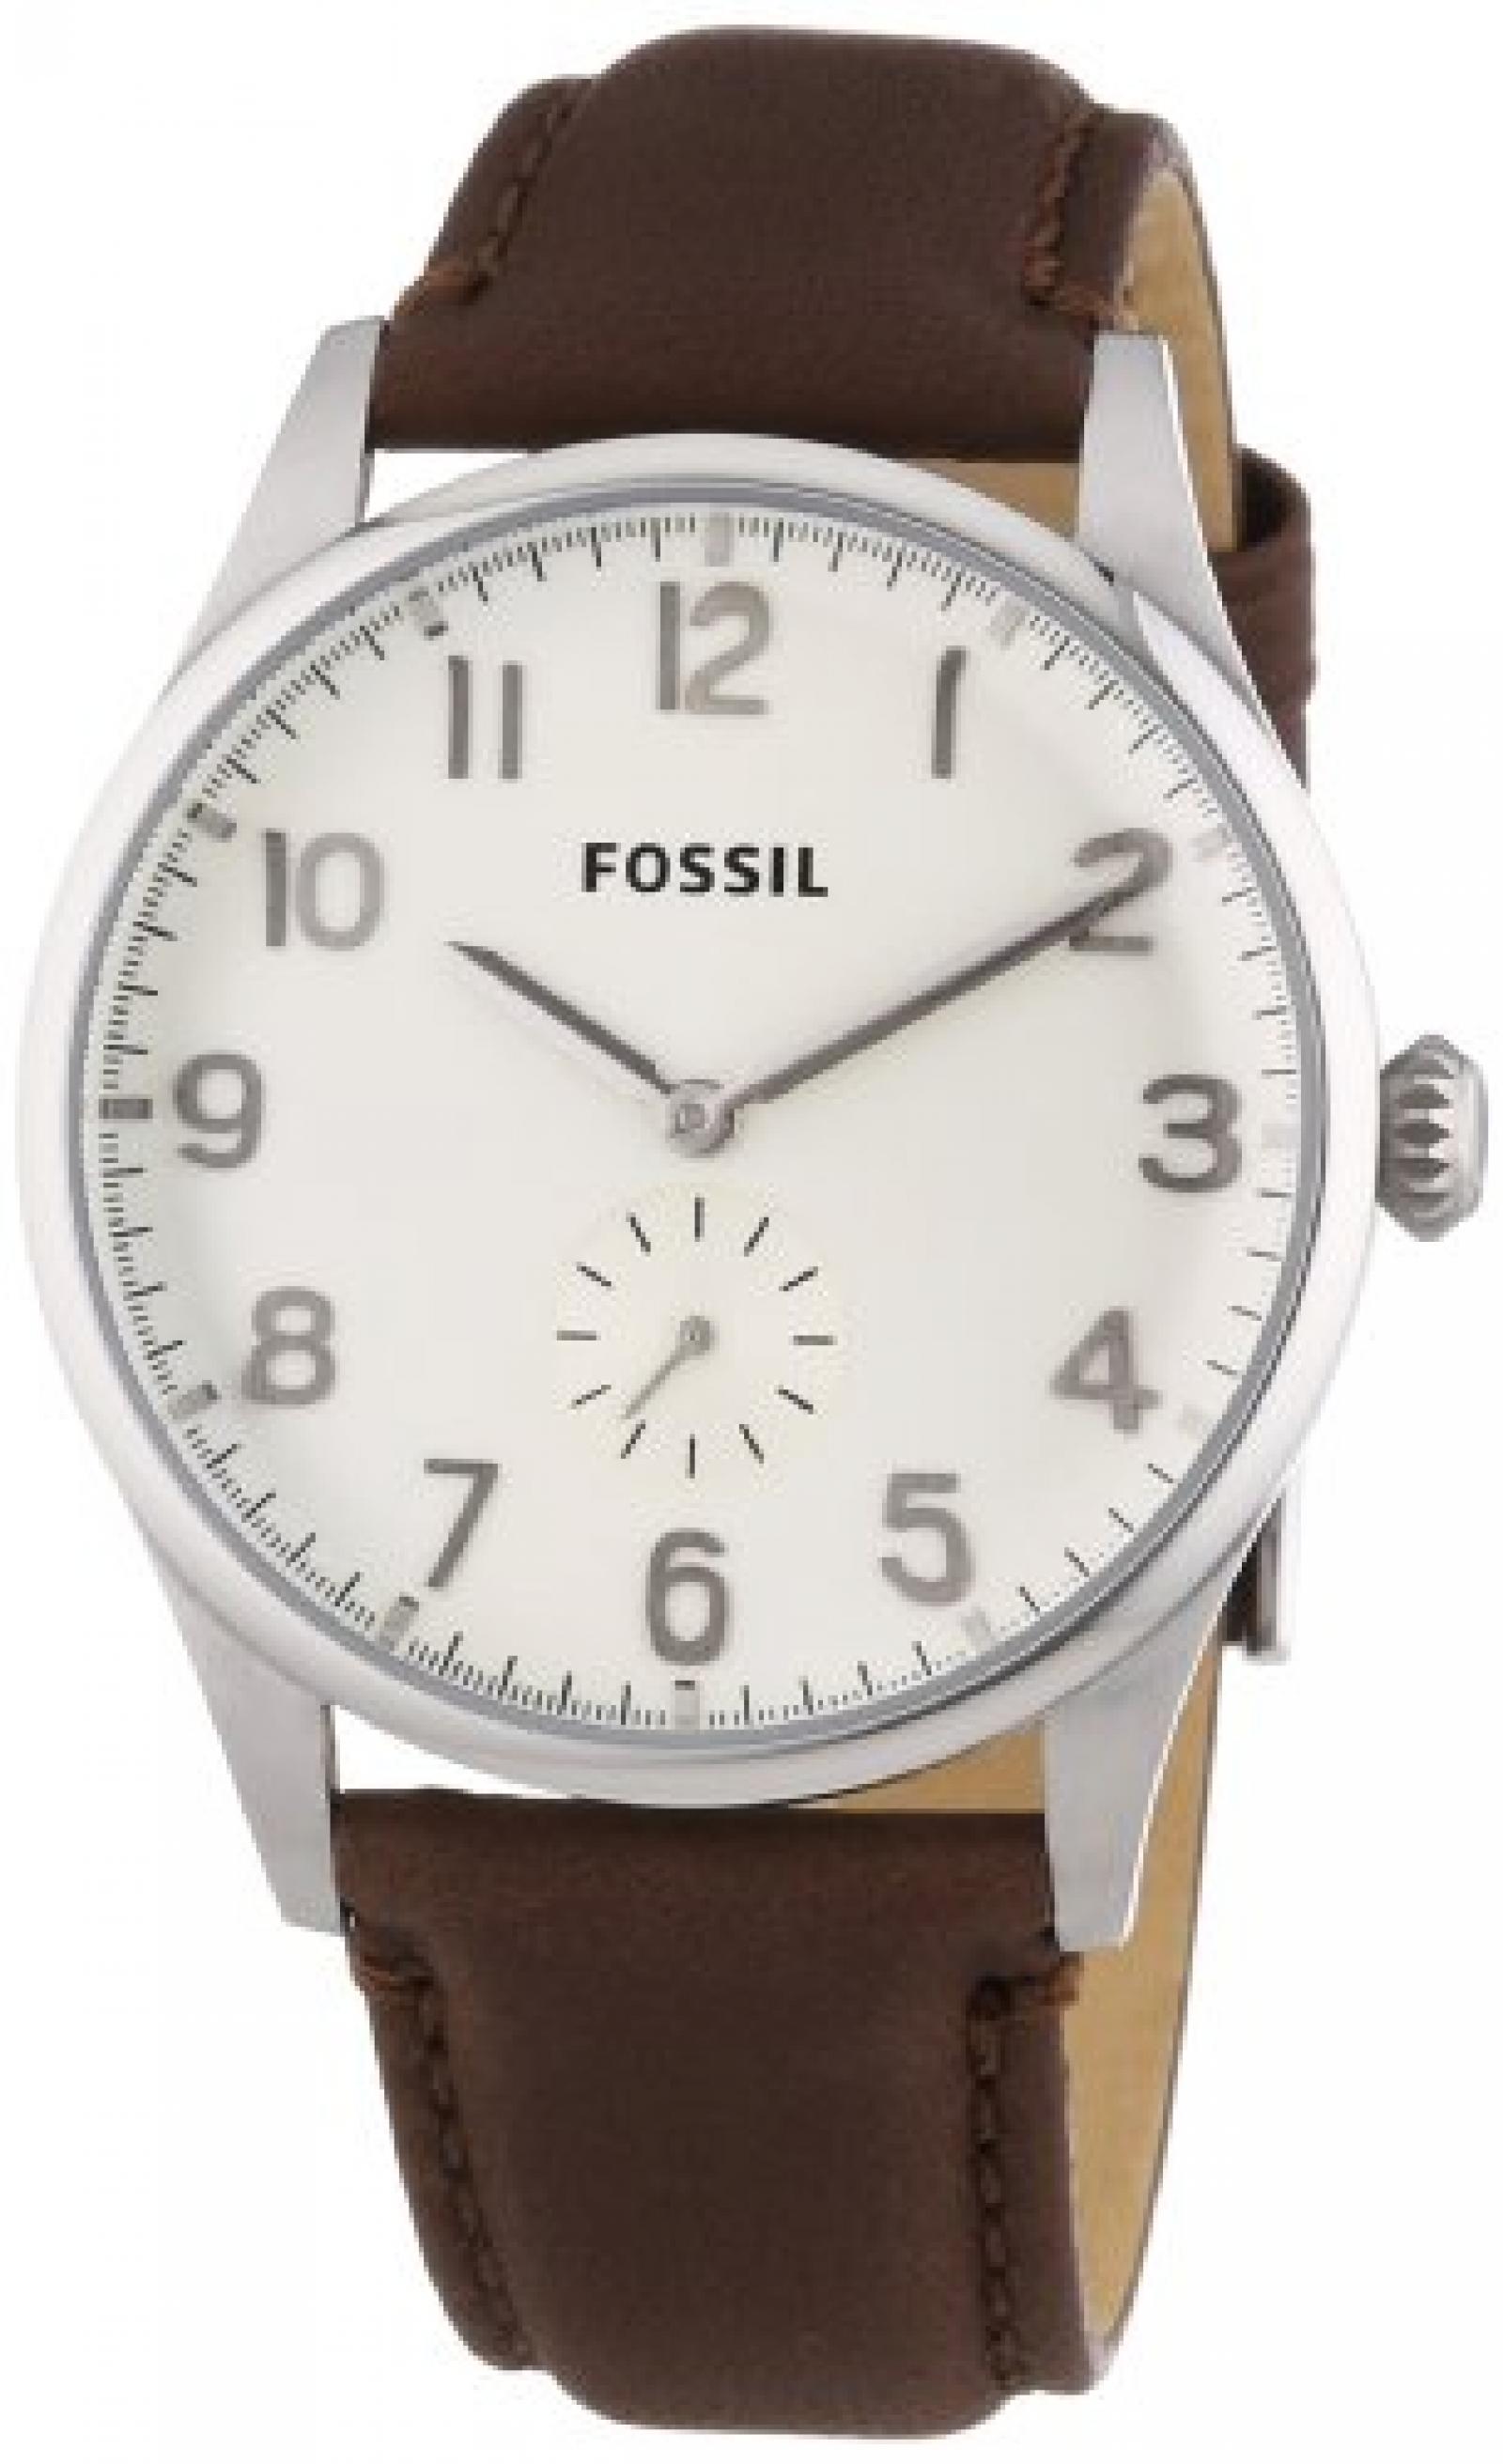 Fossil Herren-Armbanduhr XL The Agent Analog Quarz Leder FS4851 